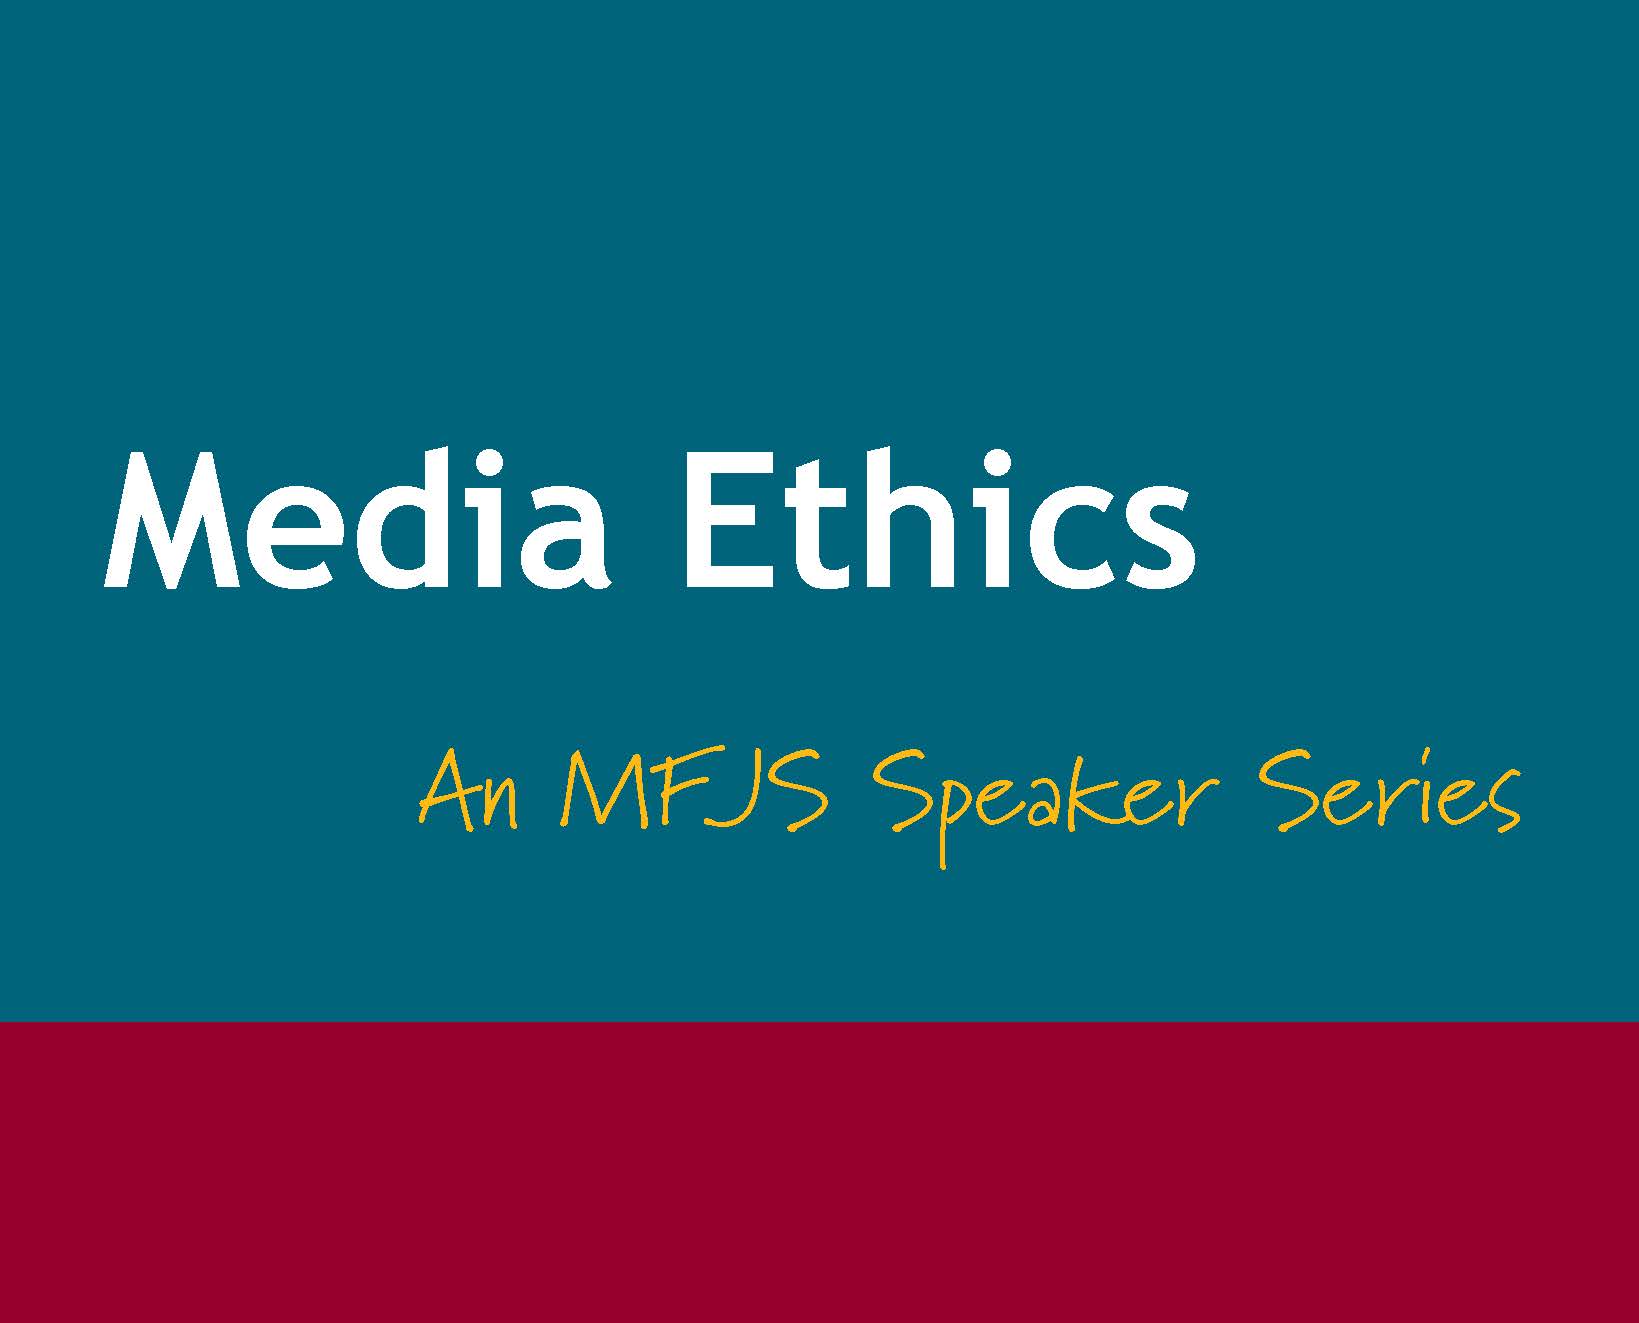 Media Ethics: An MFJS Speaker Series